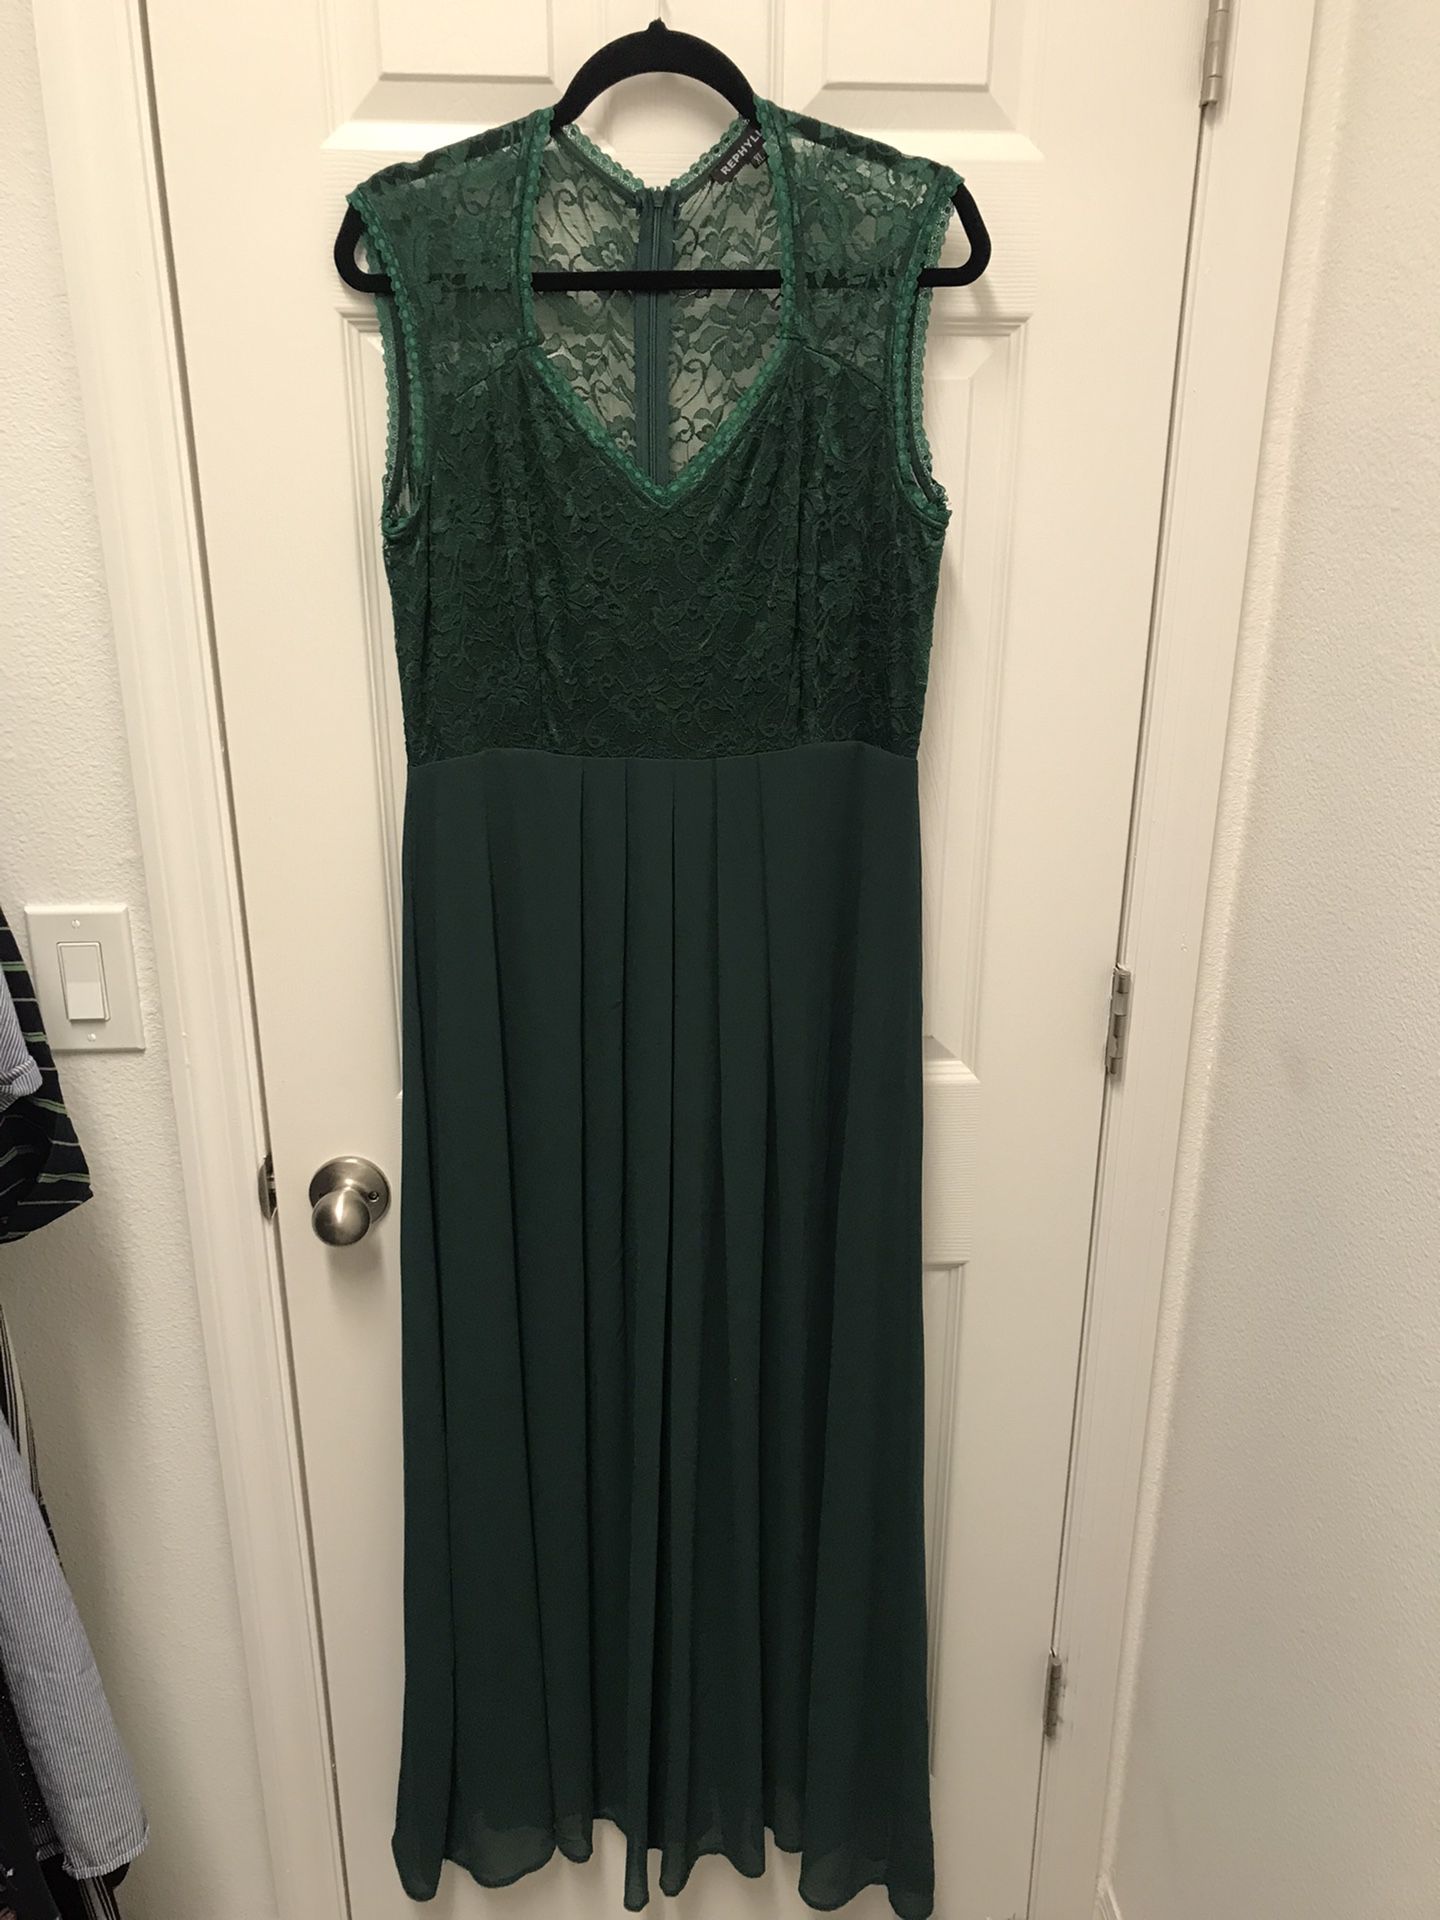 Women’s XL Emerald Green Dress Long